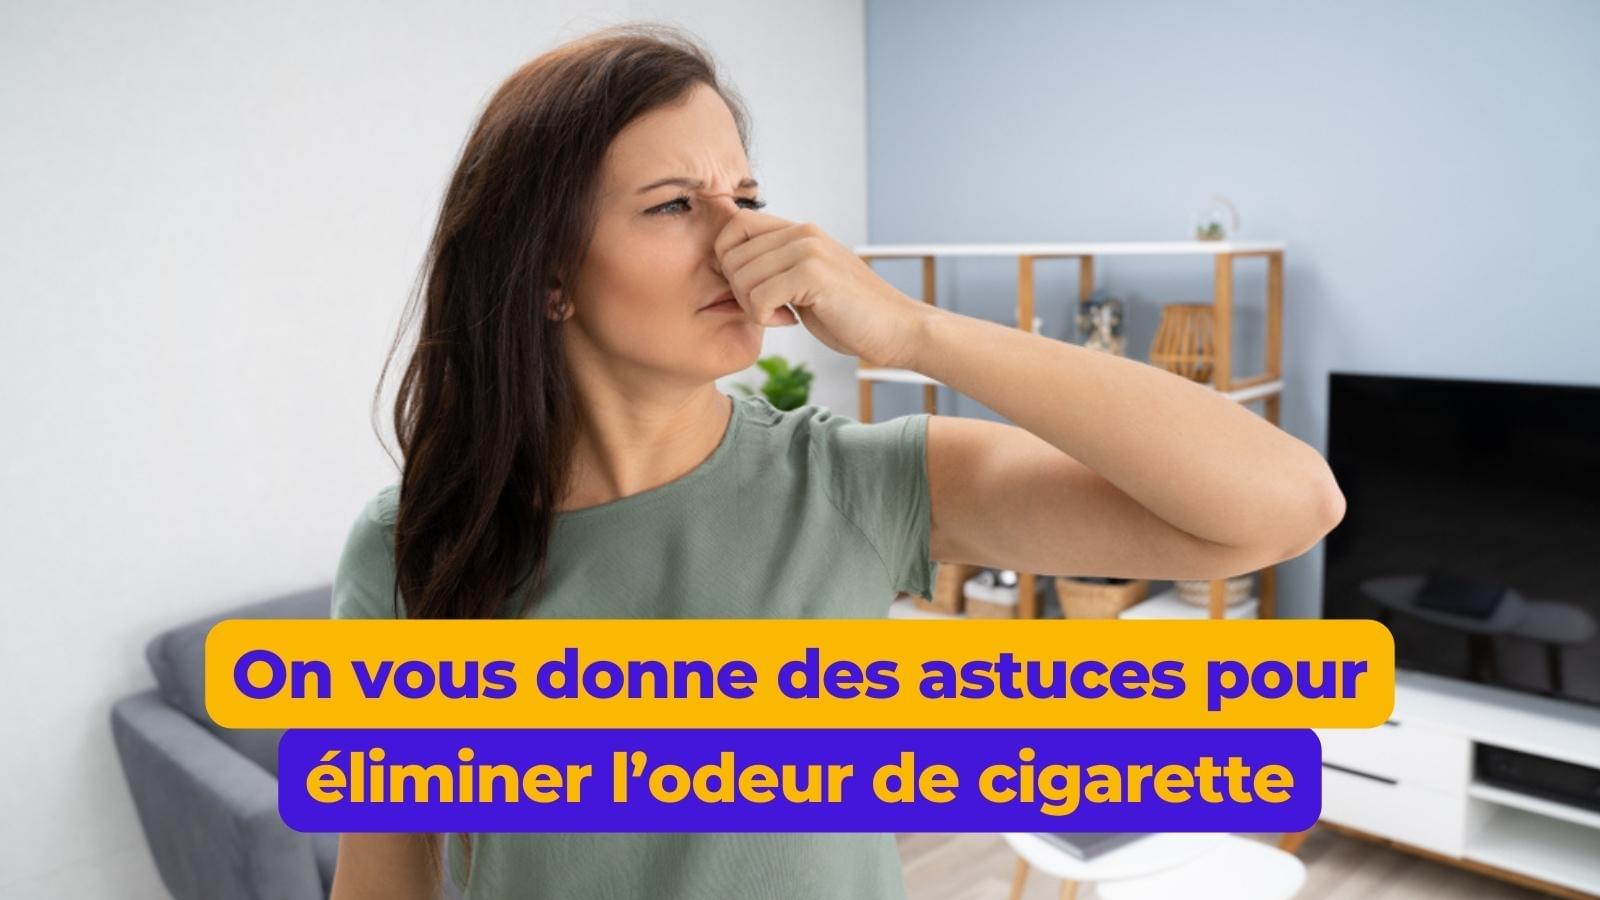 Enlever l'odeur de cigarette rapidement : comment faire ?